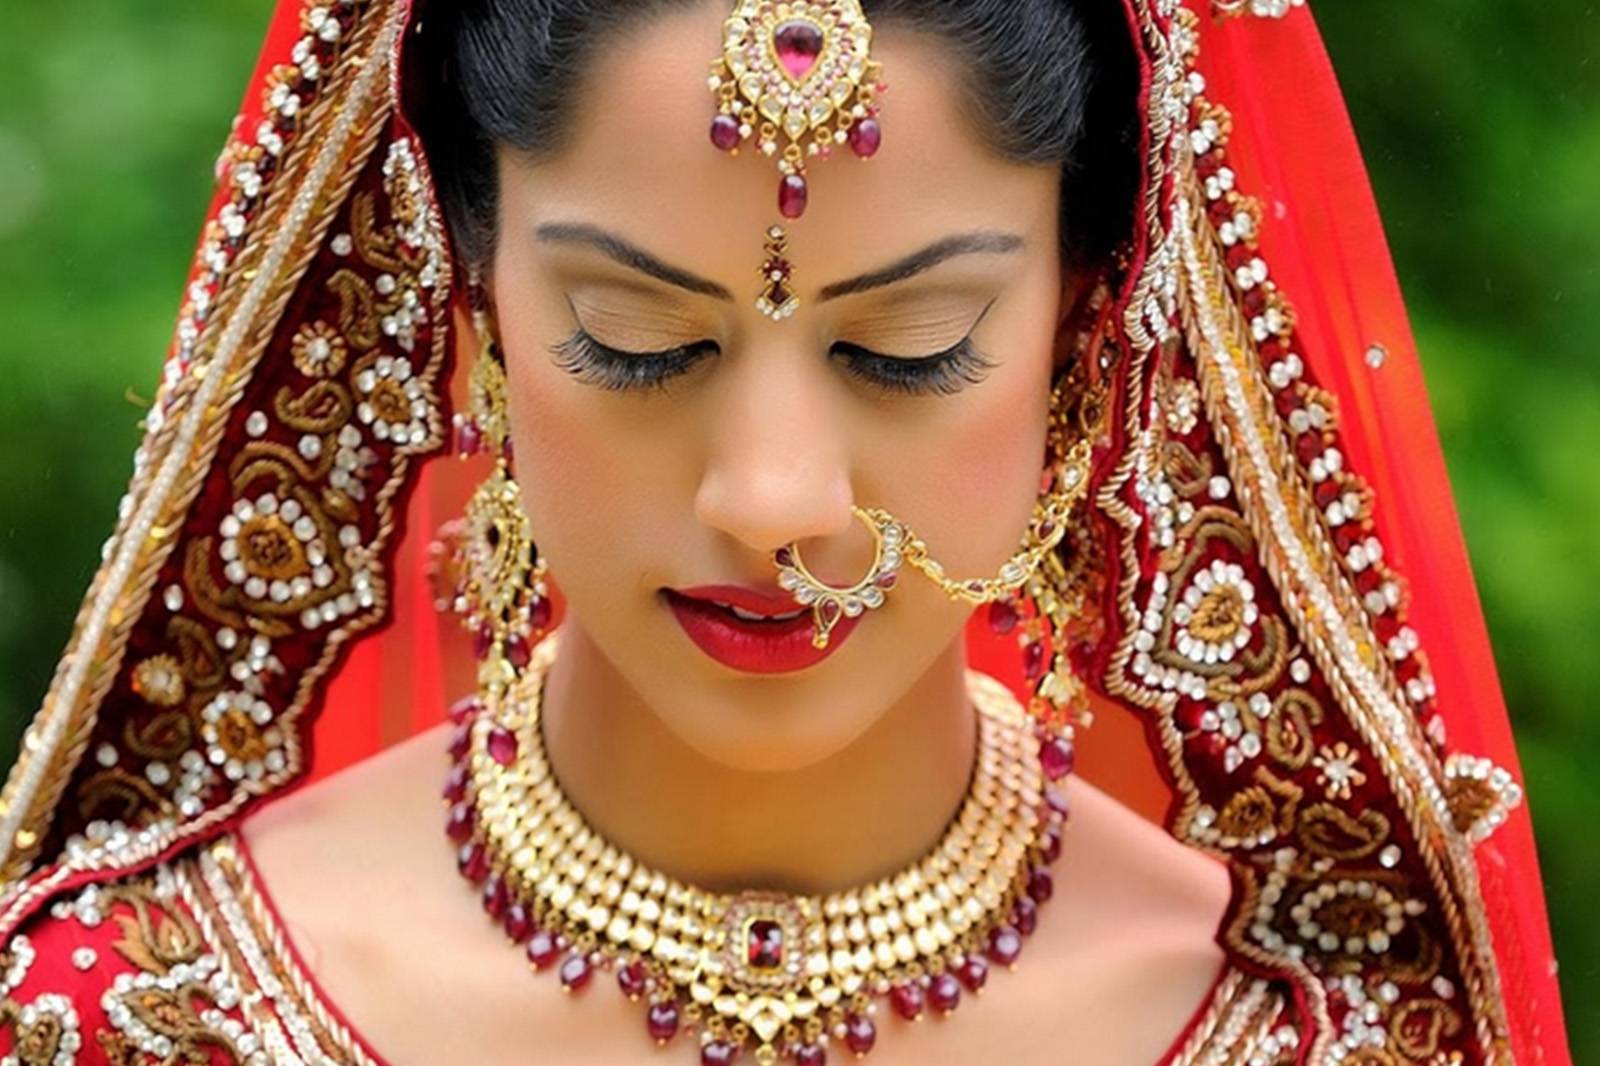 La increíble vestimenta de las novias en India – Mujer